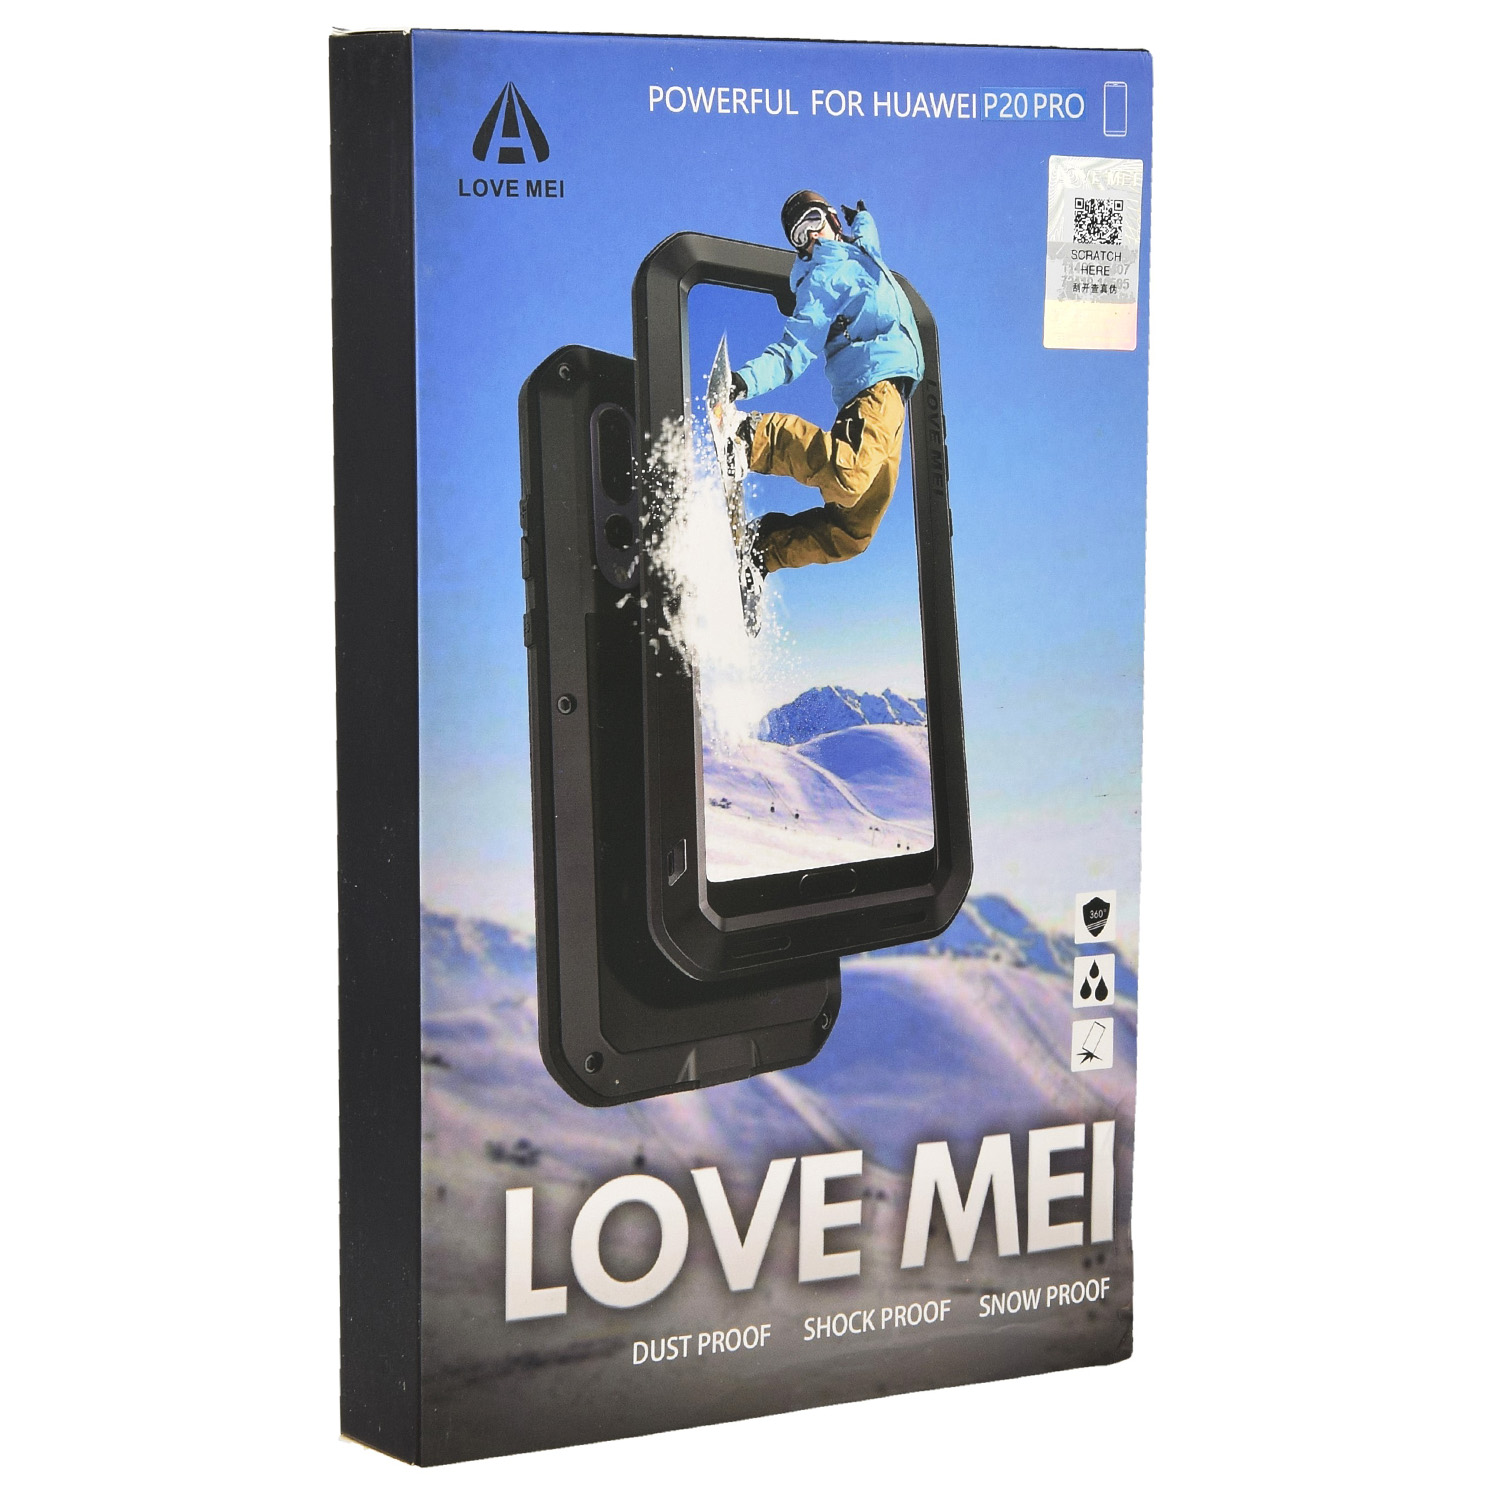 Oryginalne Pancerne Etui marki LOVE MEI z serii Powerful dla Huawei P20 Pro